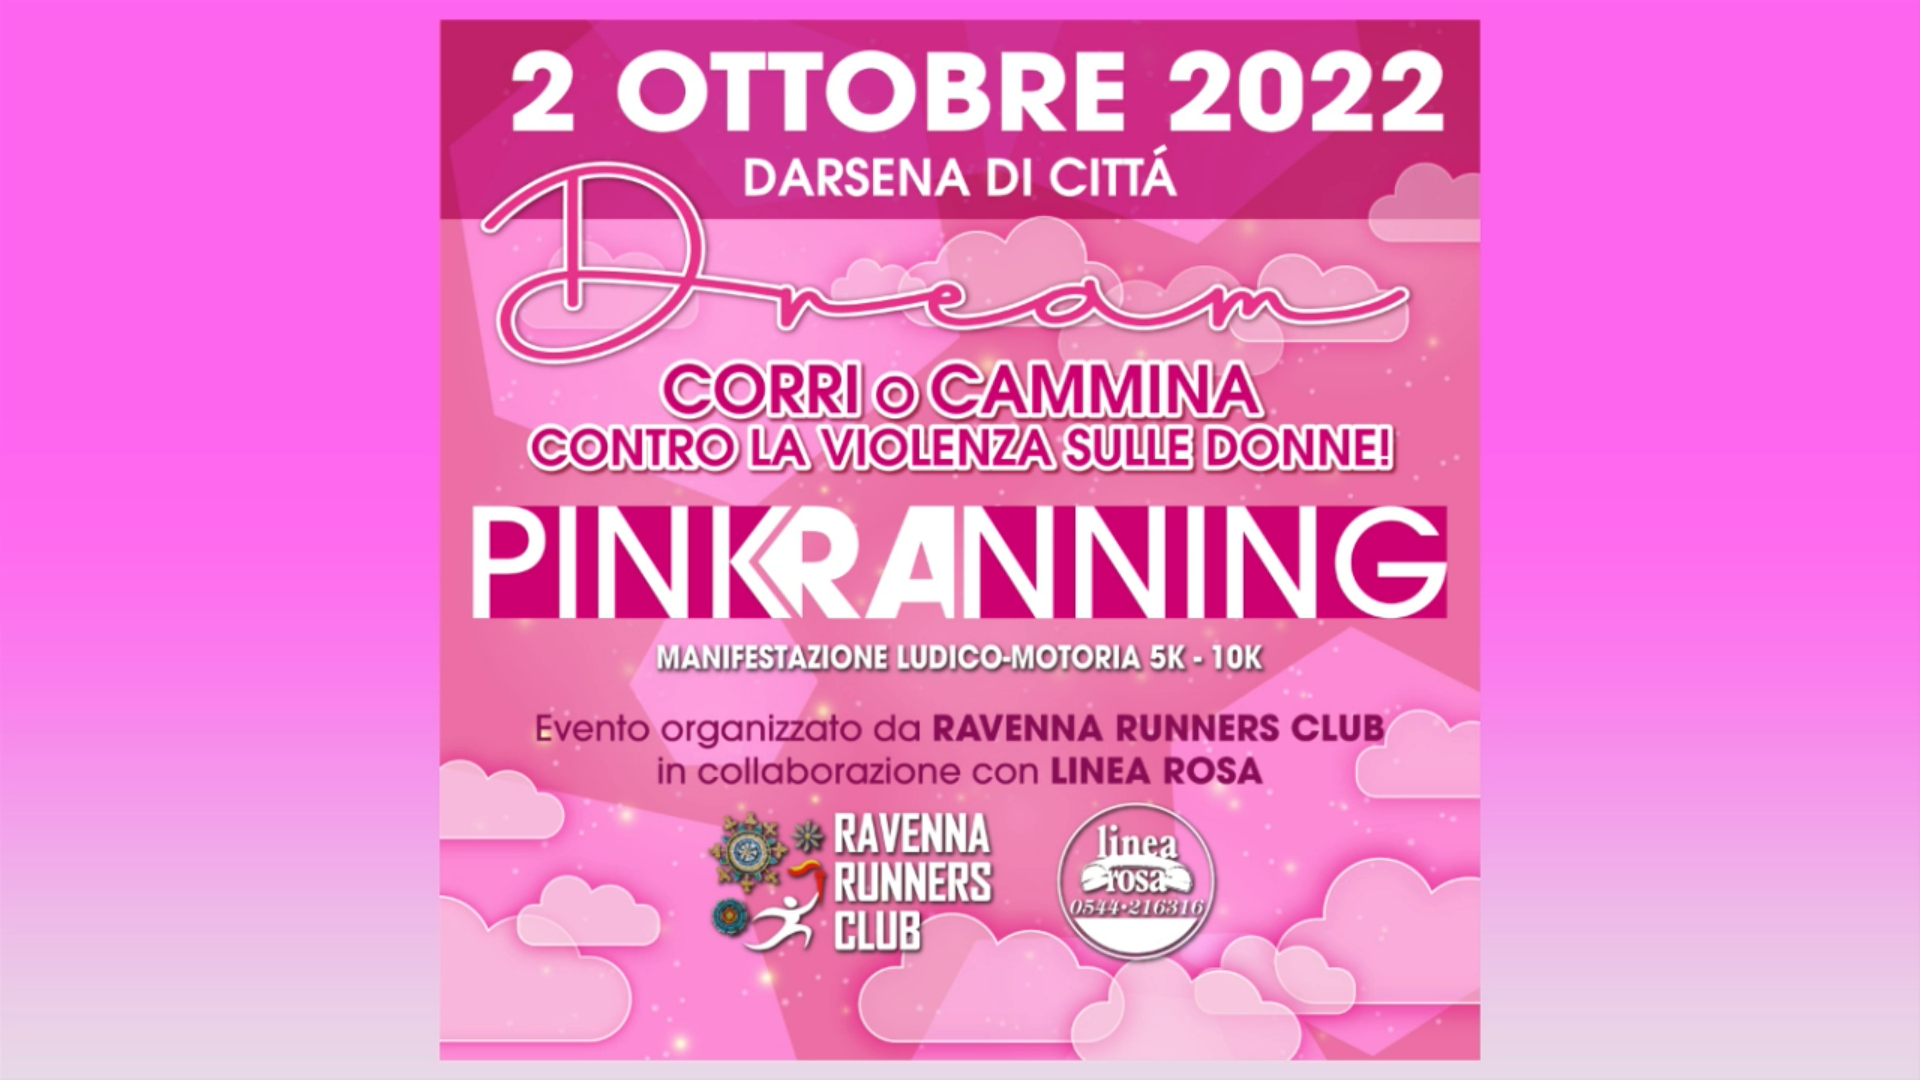 Pink Running 2022: Corri o cammina contro la violenza sulle donne